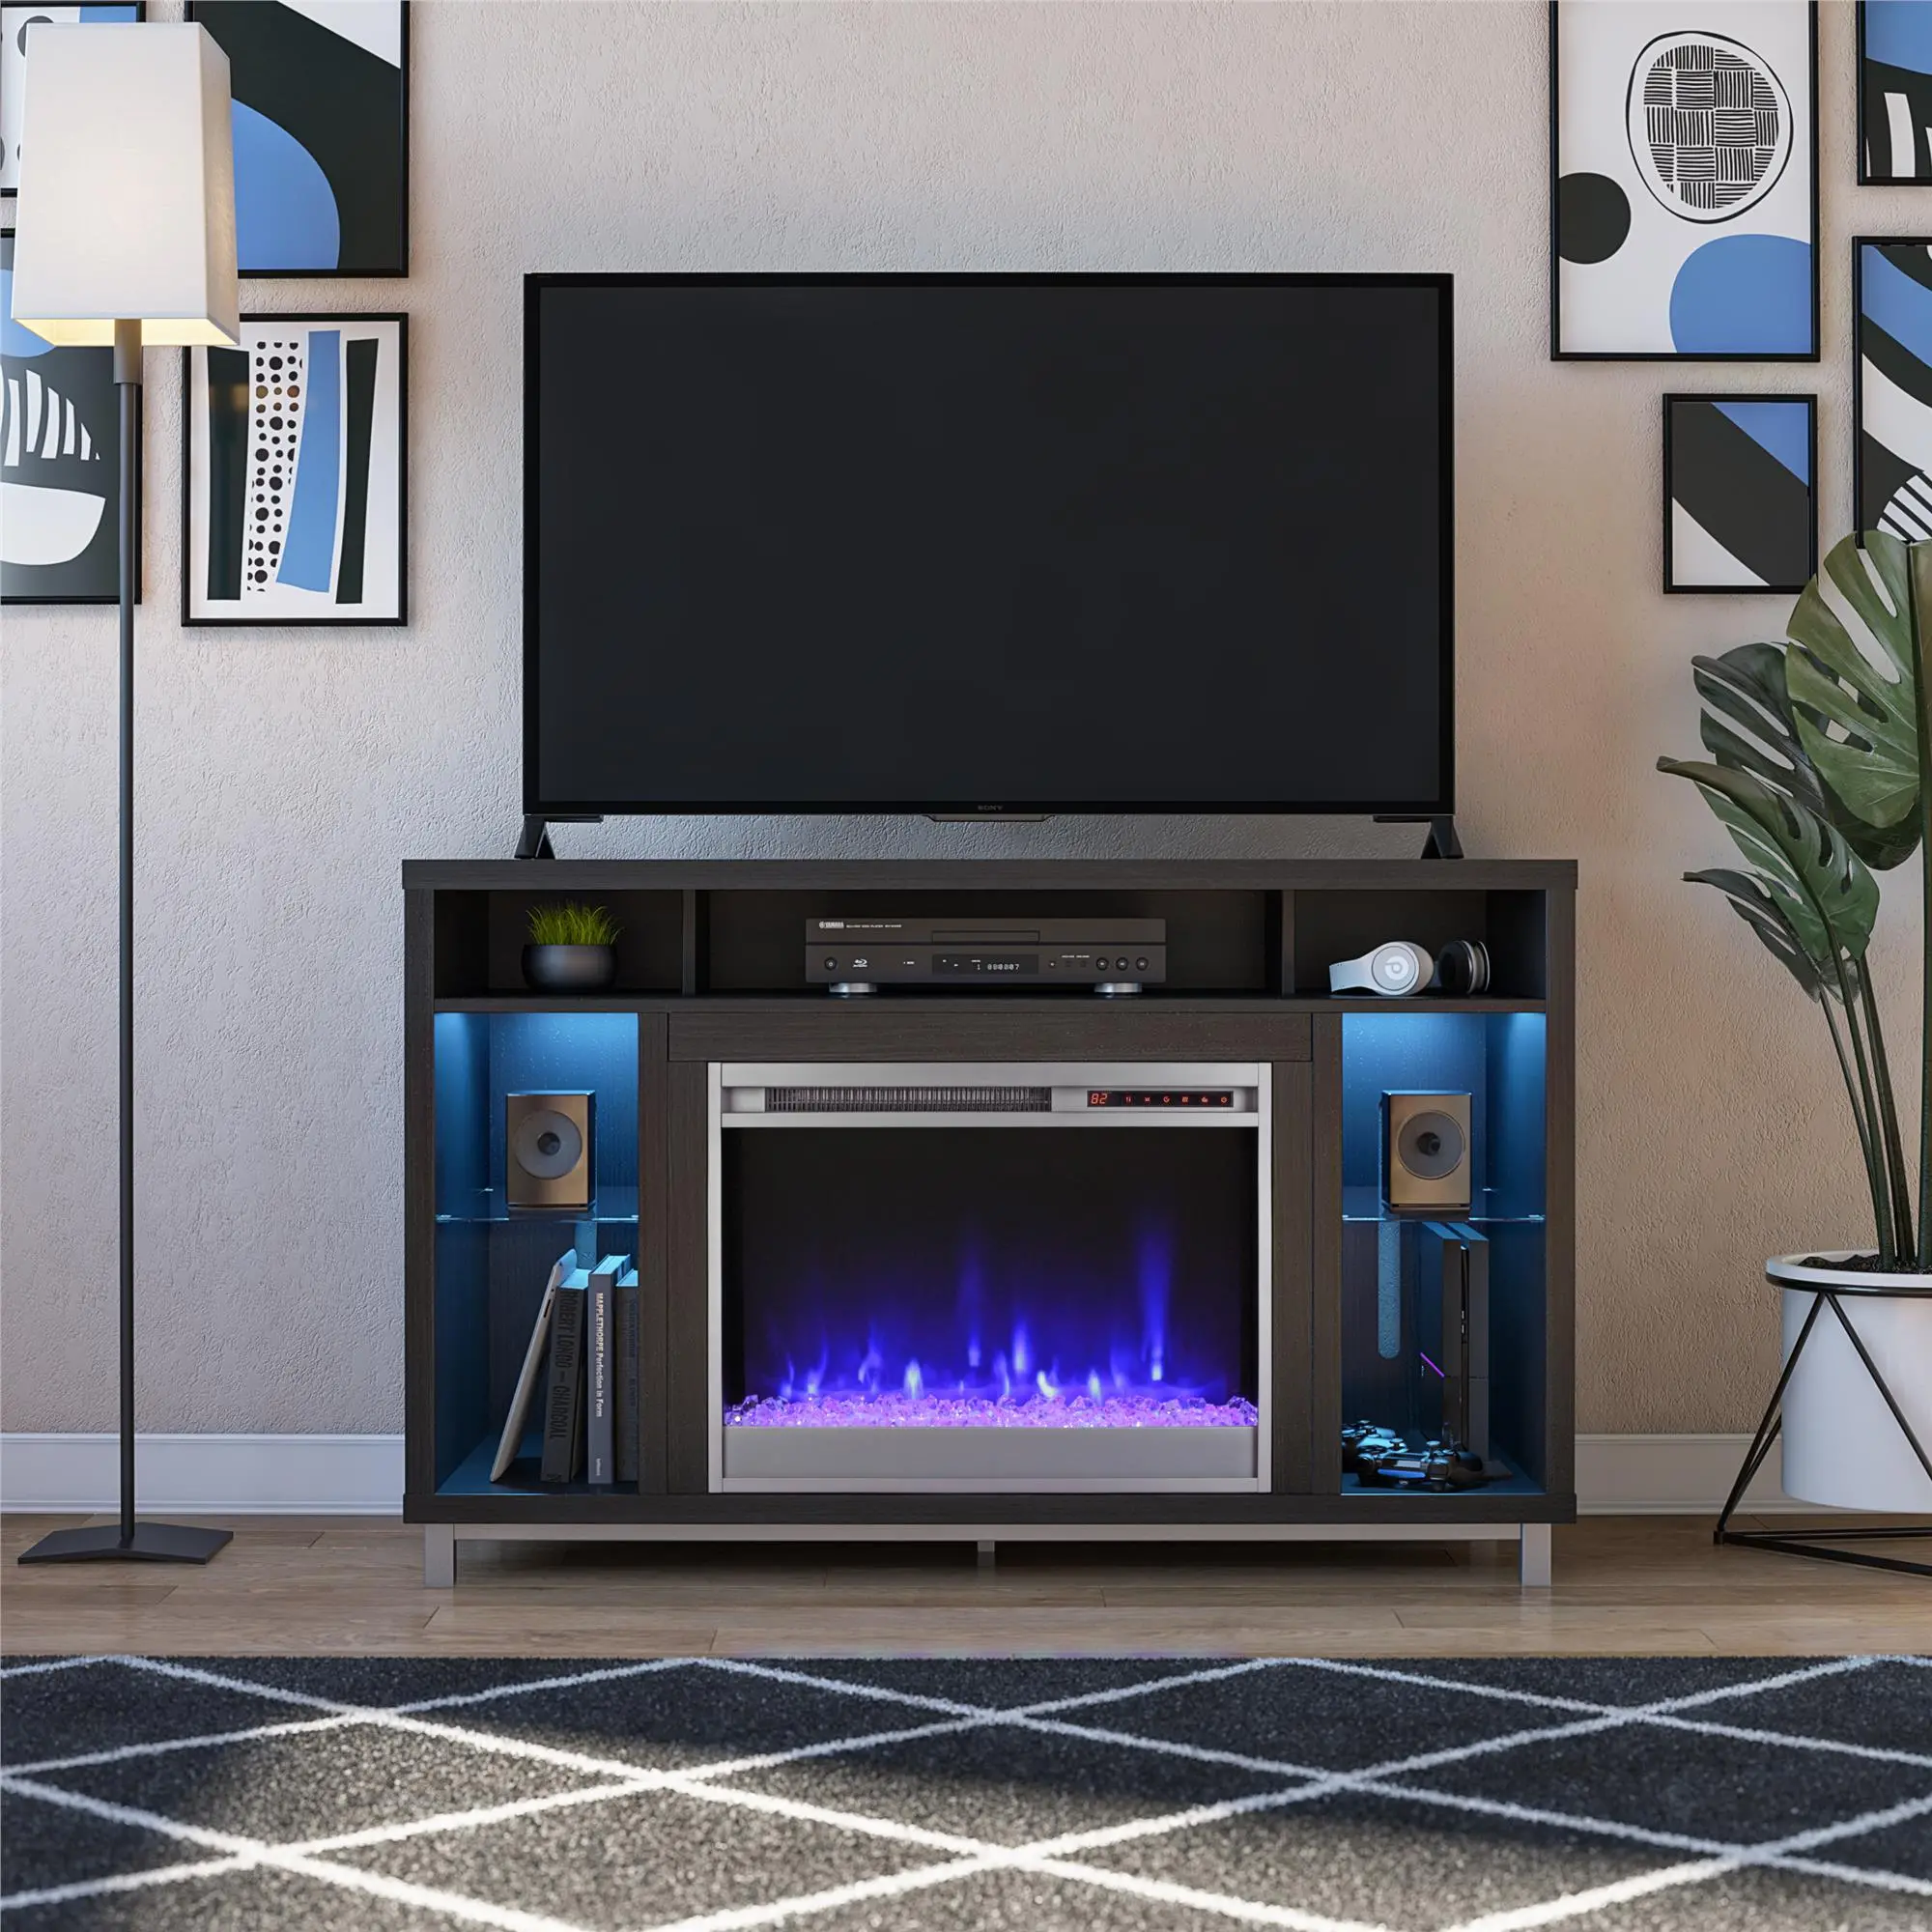 Lumina Modern Black Oak Fireplace TV Stand